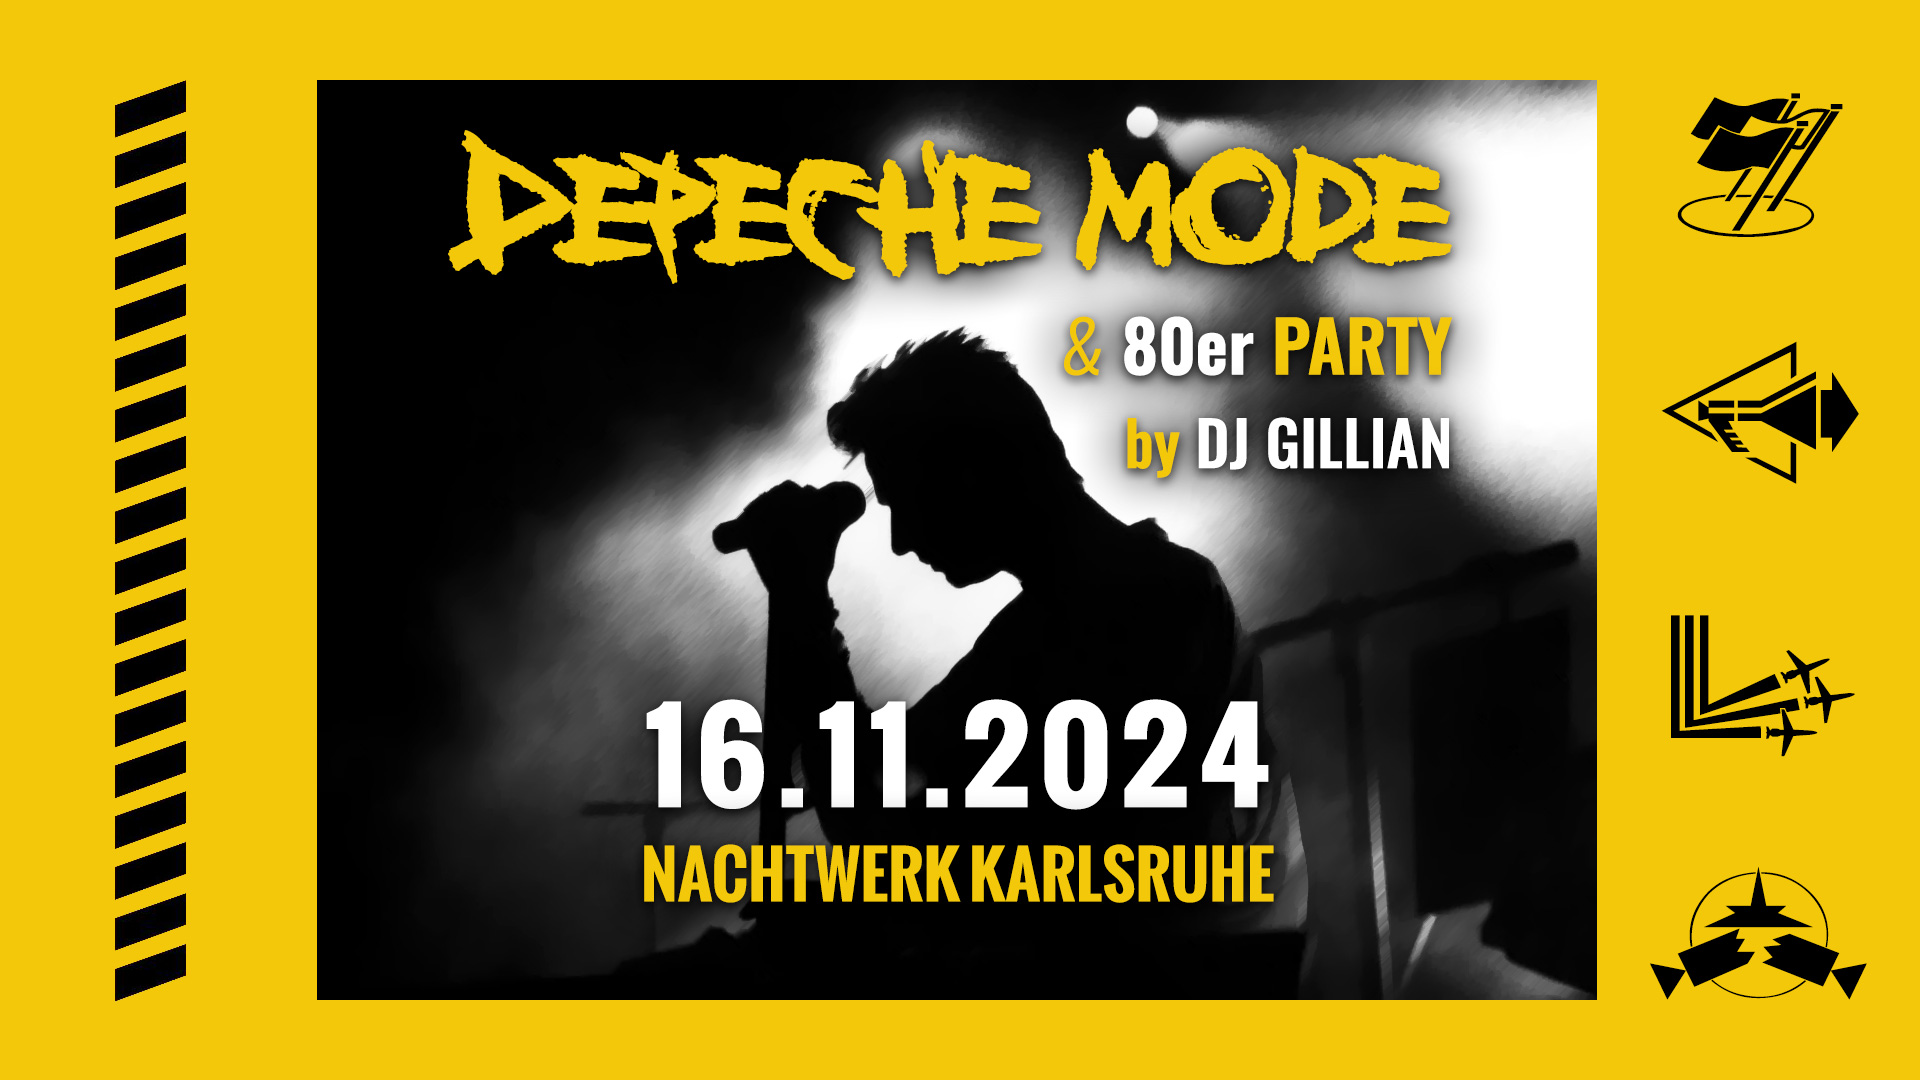 Die Depeche Mode & 80er Party im Nachtwerk Karlsruhe mit DJ GILLIAN. Die großartigen Songs von Depeche Mode, die kultigsten Hits aus den 80ern und die beliebtesten Pop & Wave Klassiker.